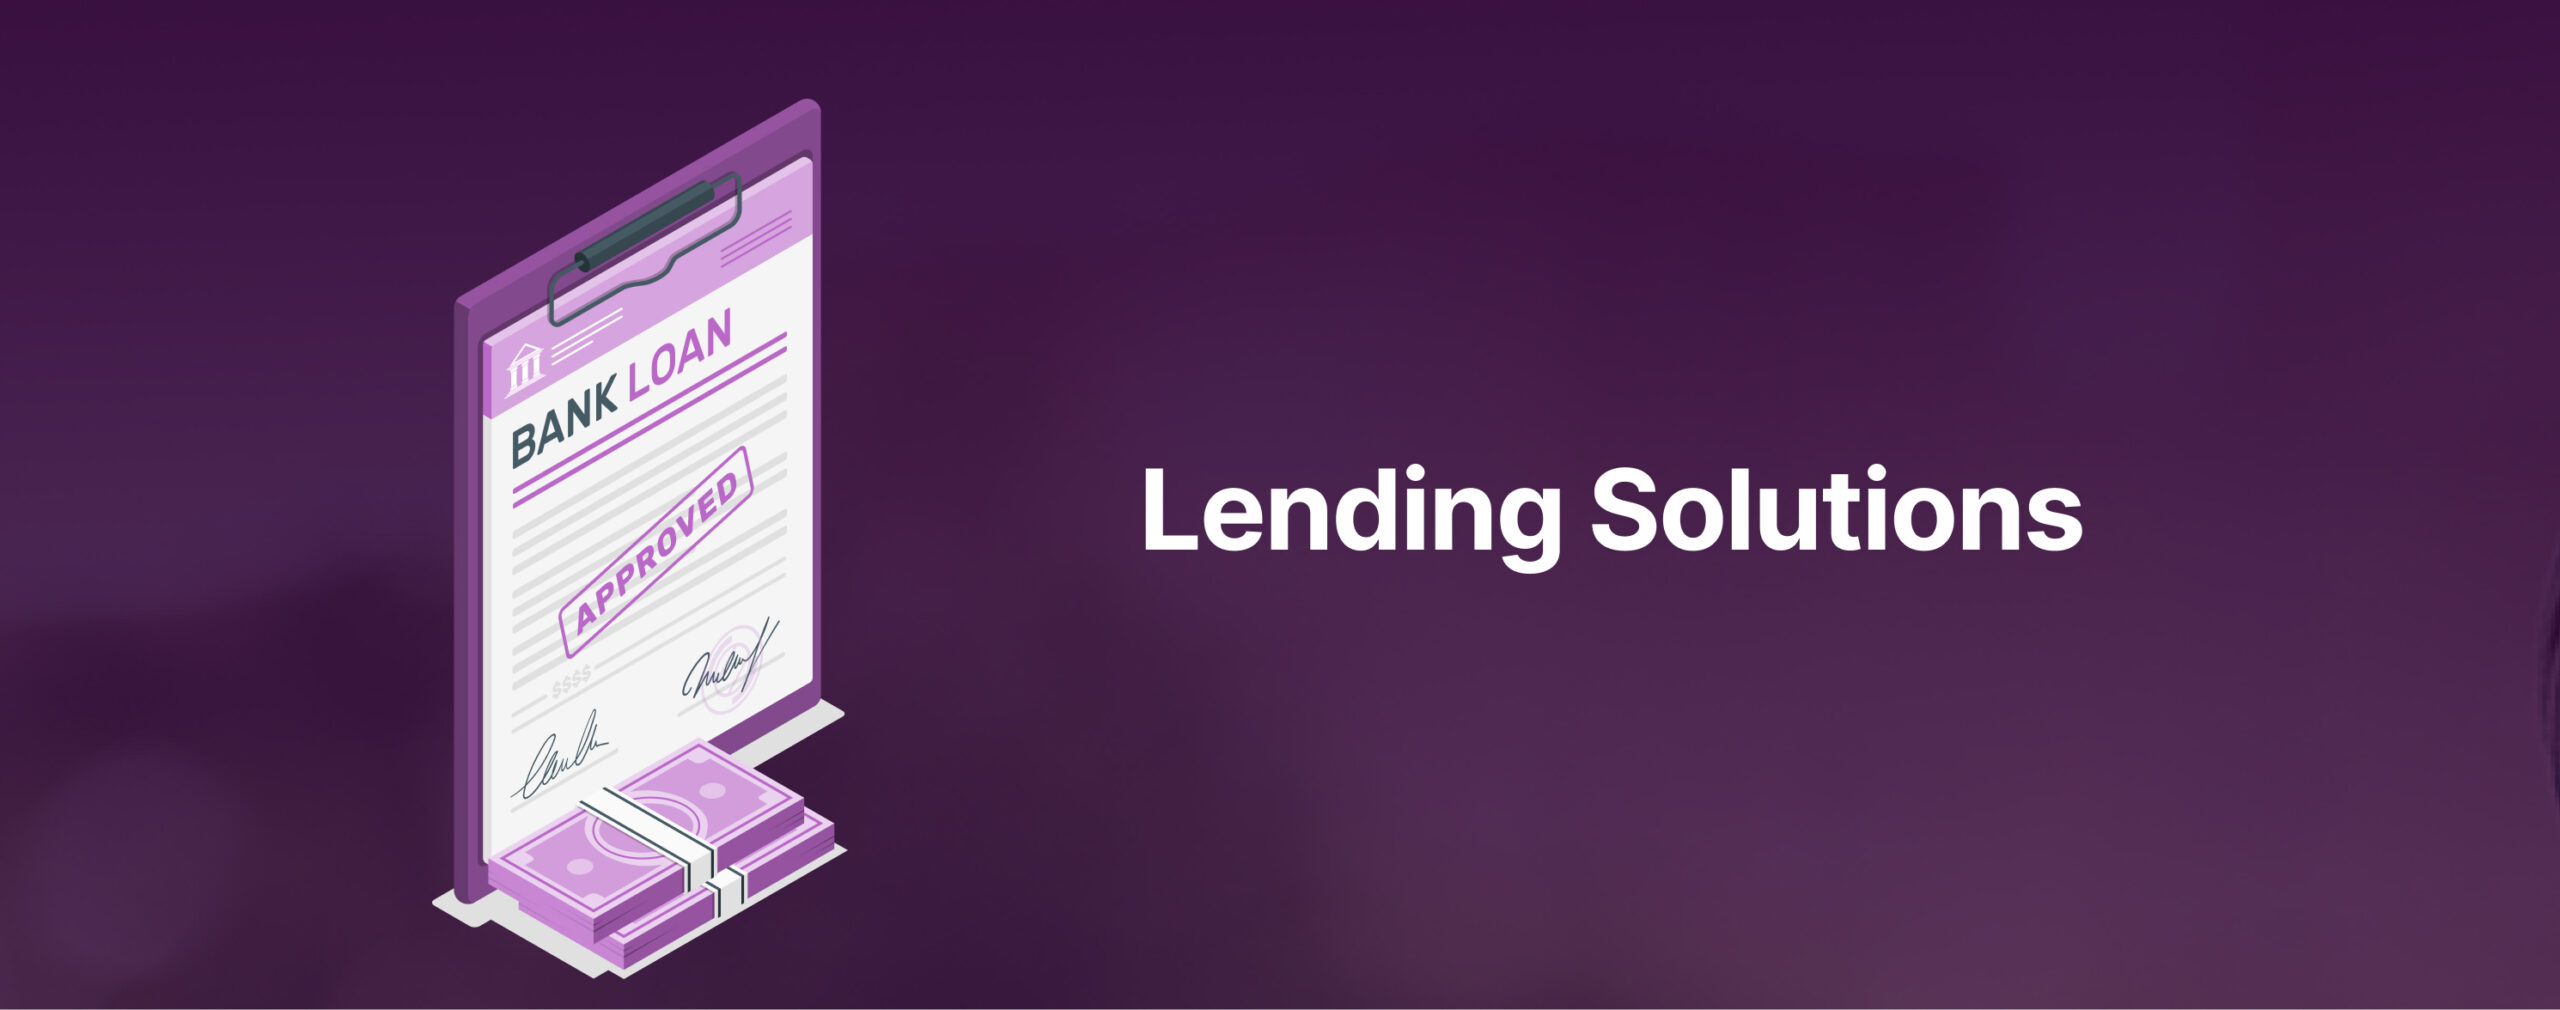 Lending-Solutions